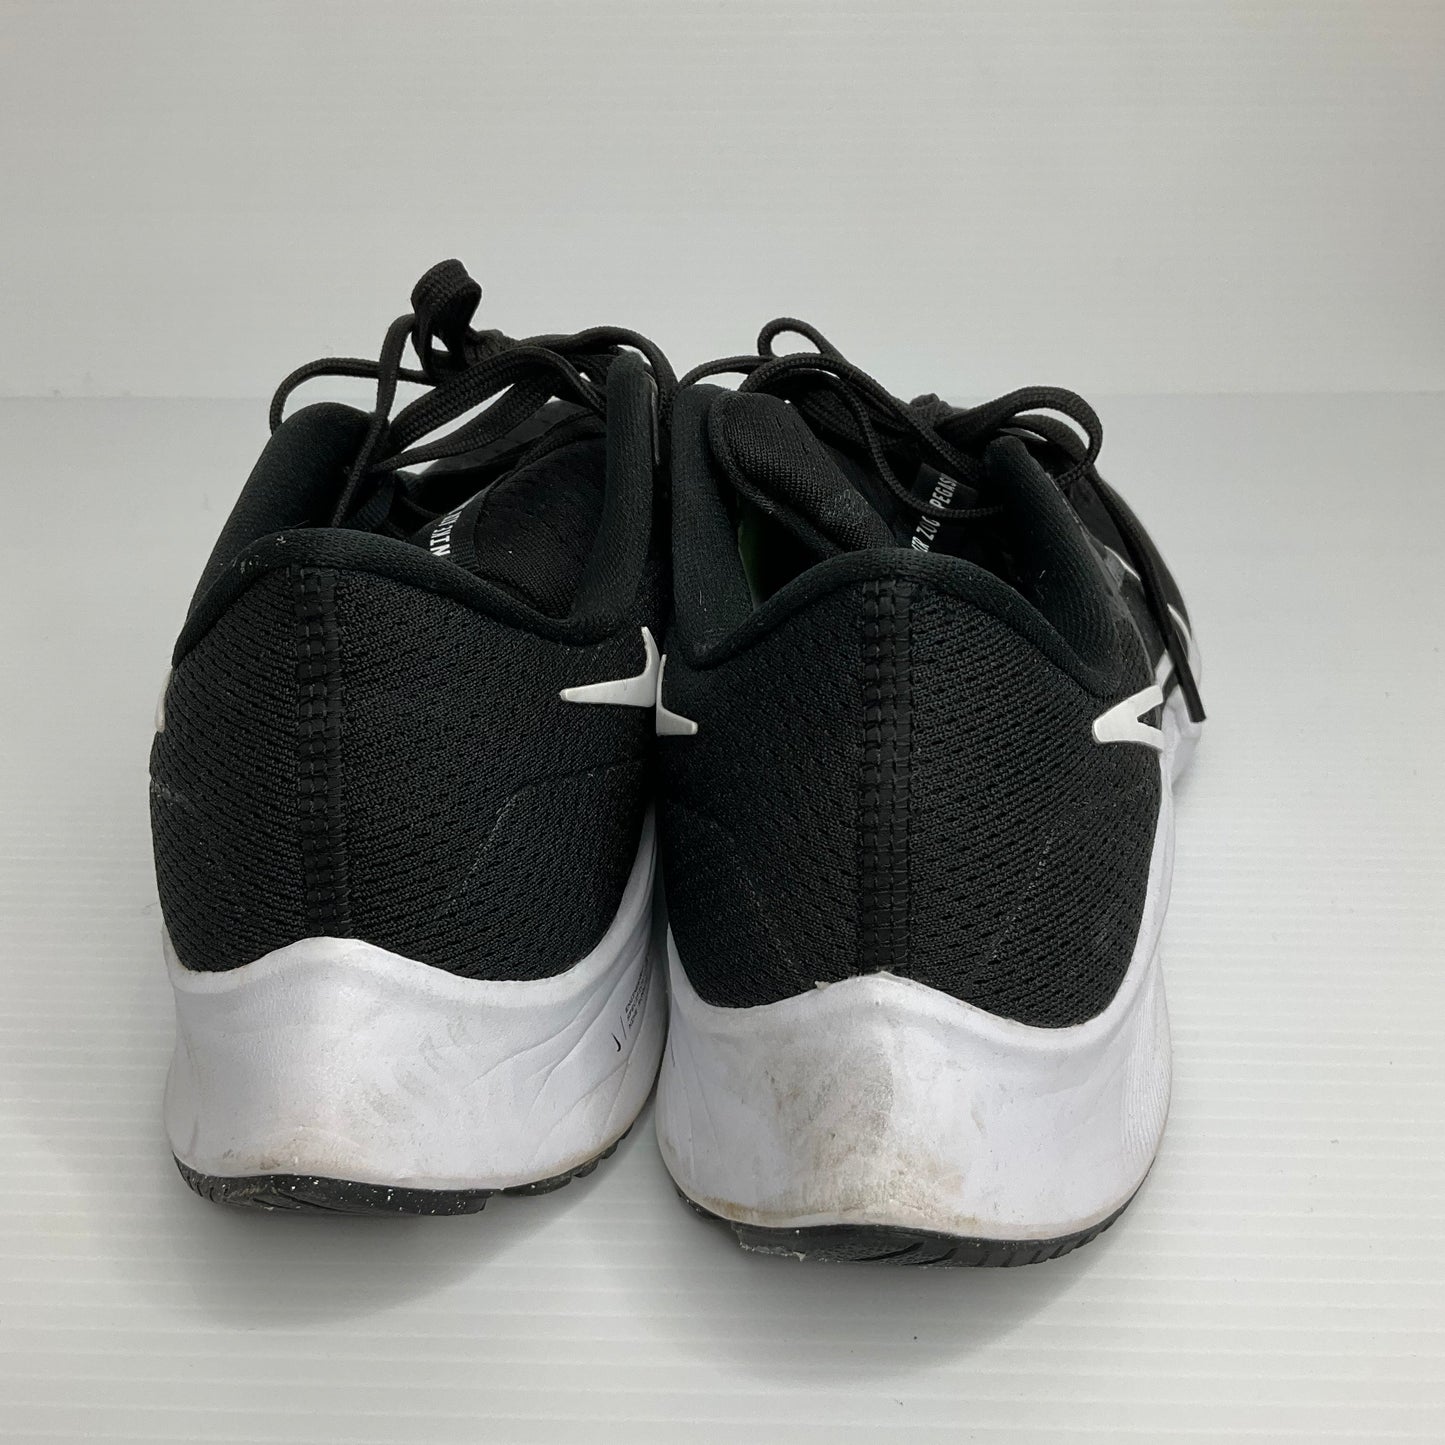 Black & White Shoes Athletic Nike, Size 10